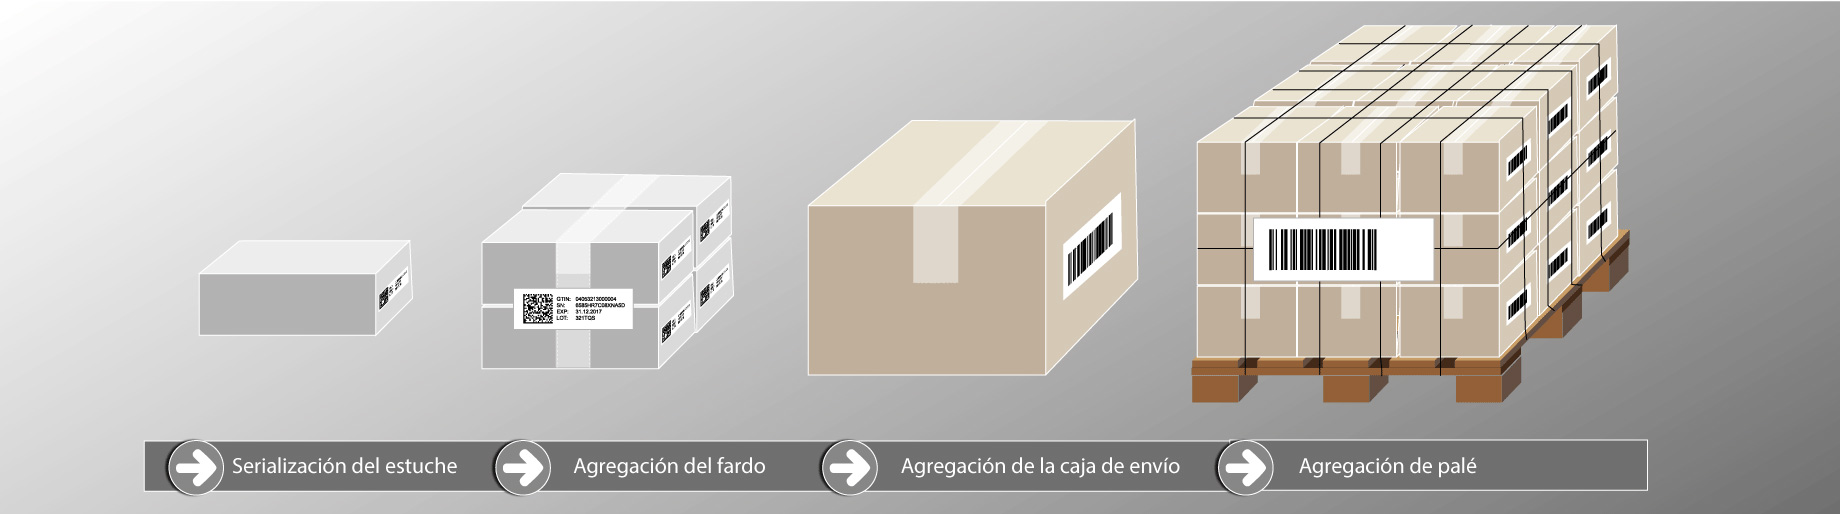 Serialización y agregación de productos sanitarios en diferentes niveles de embalaje